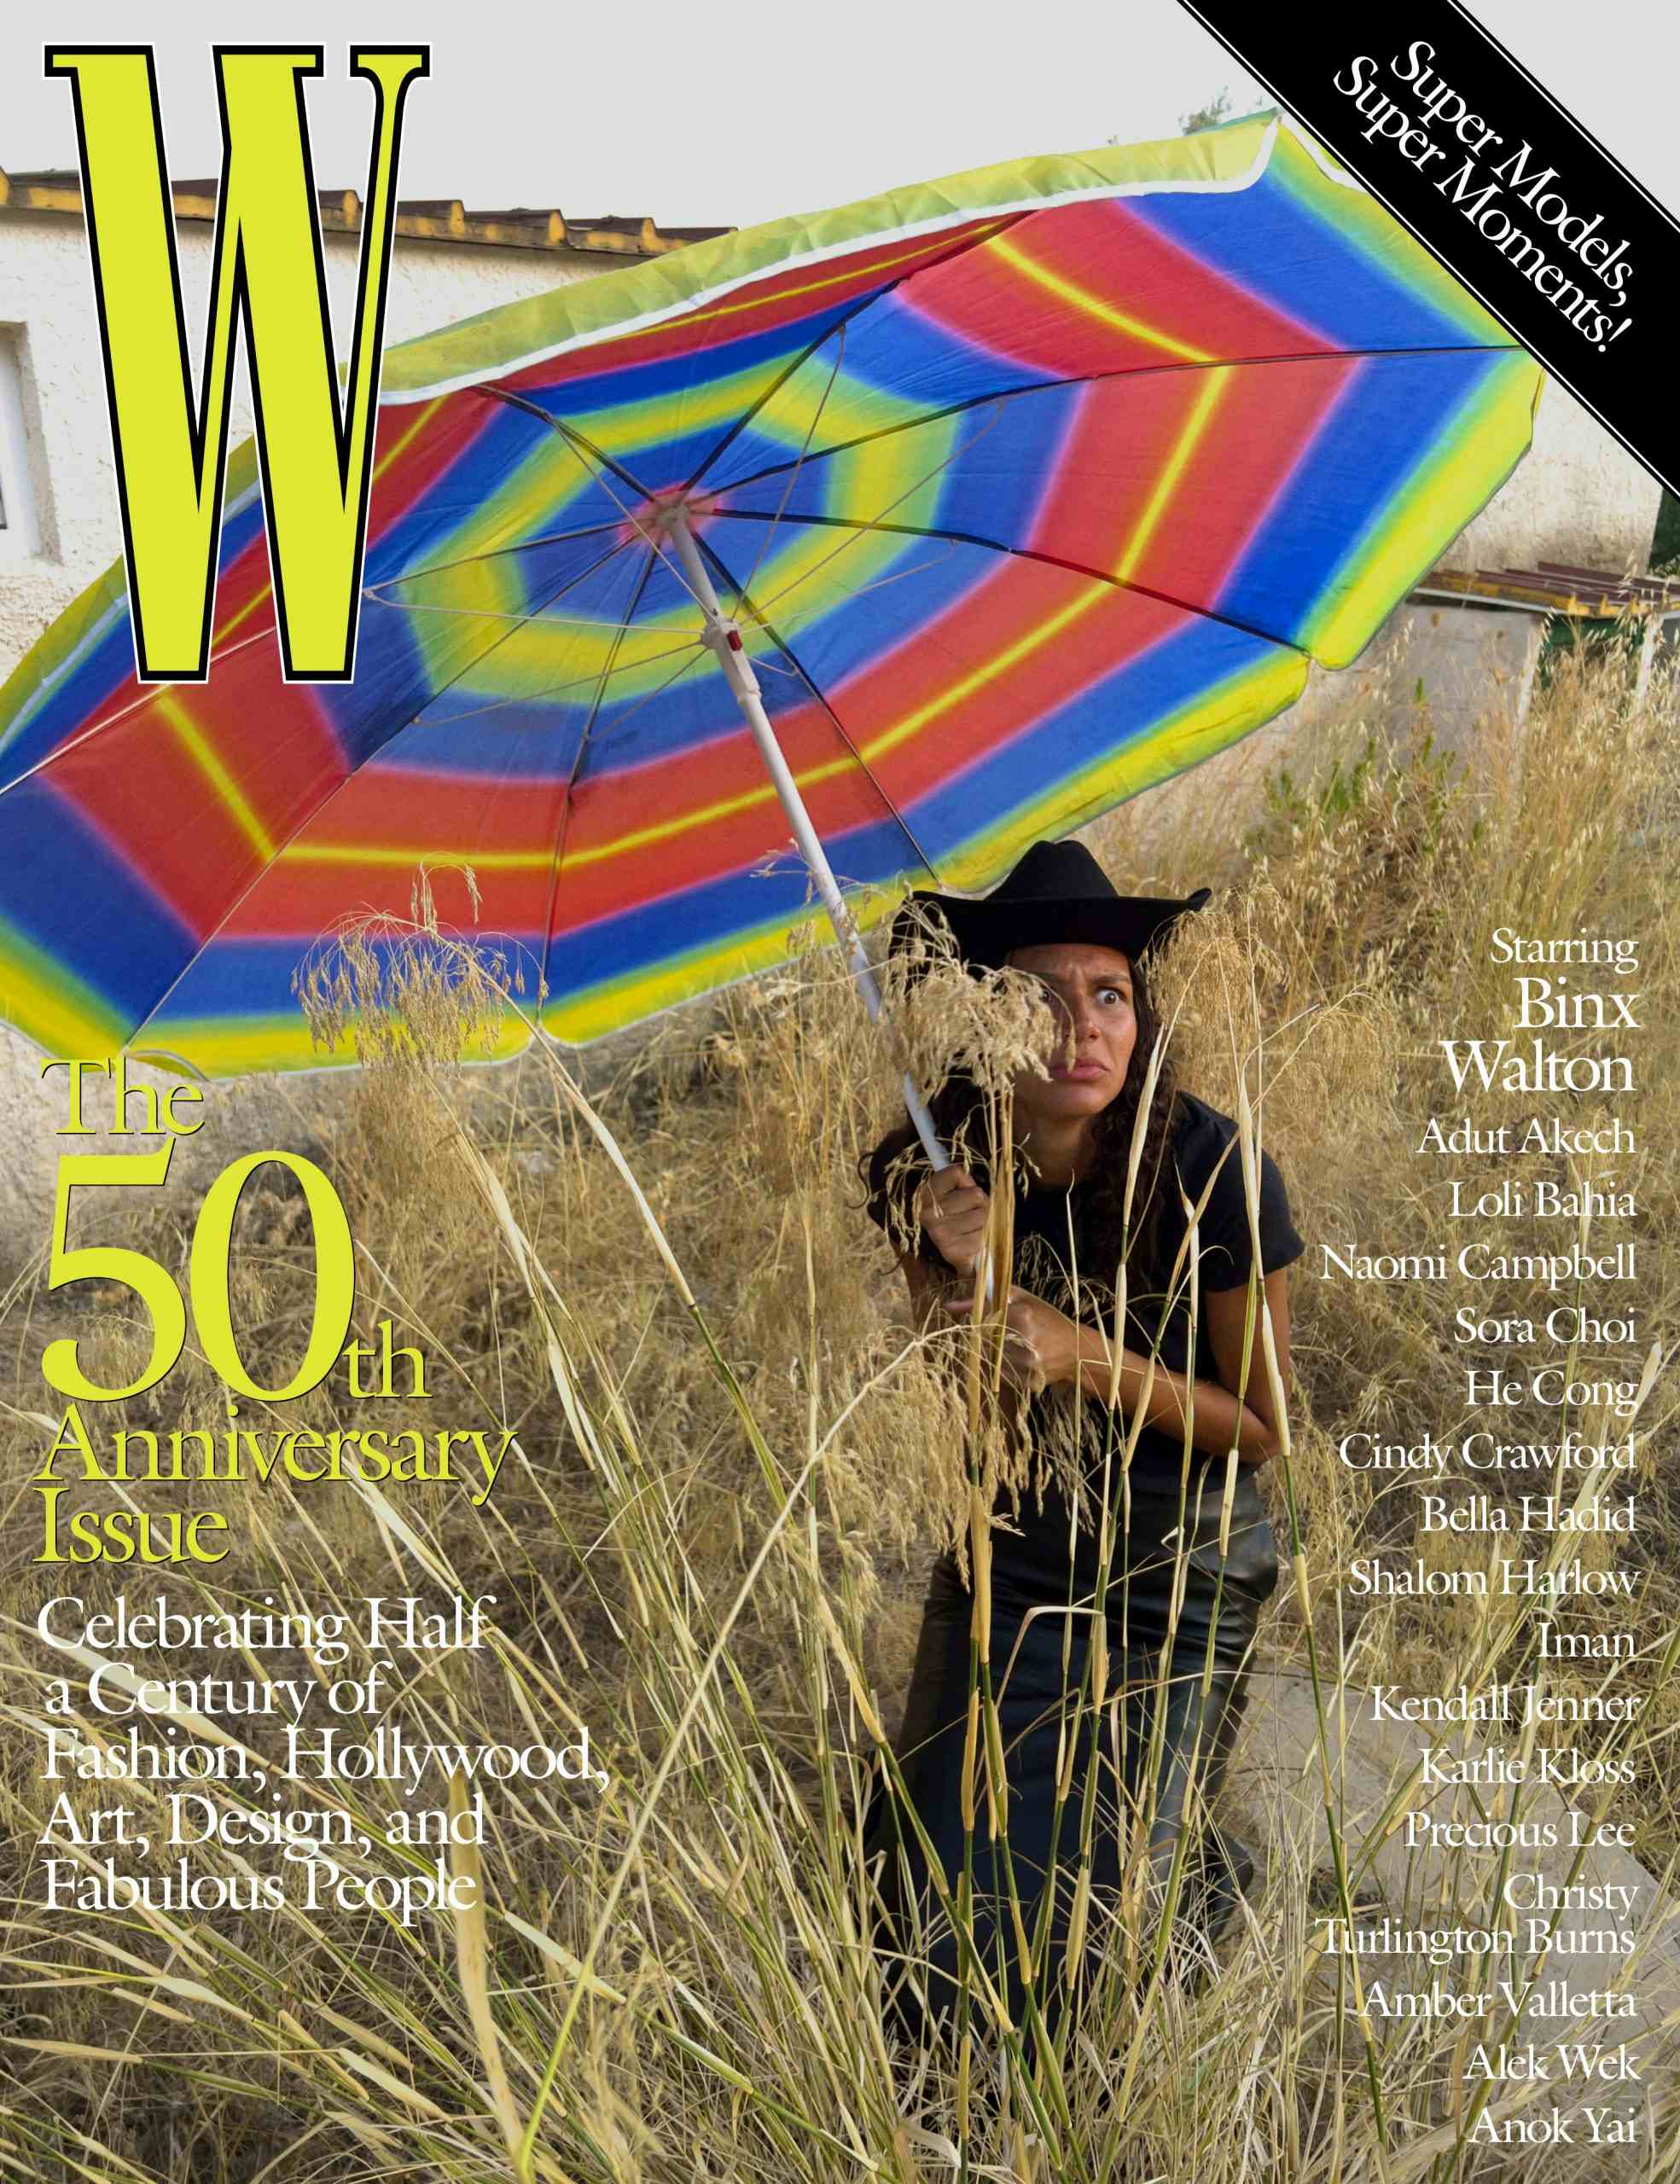 W MAGAZINE - W 50TH ANNIVERSARY ISSUE
Photographer: Juergen Teller
Model: Binx Walton, Alek Wek
Stylist: Jodie Barnes
Location: Noto, Sicily, IT